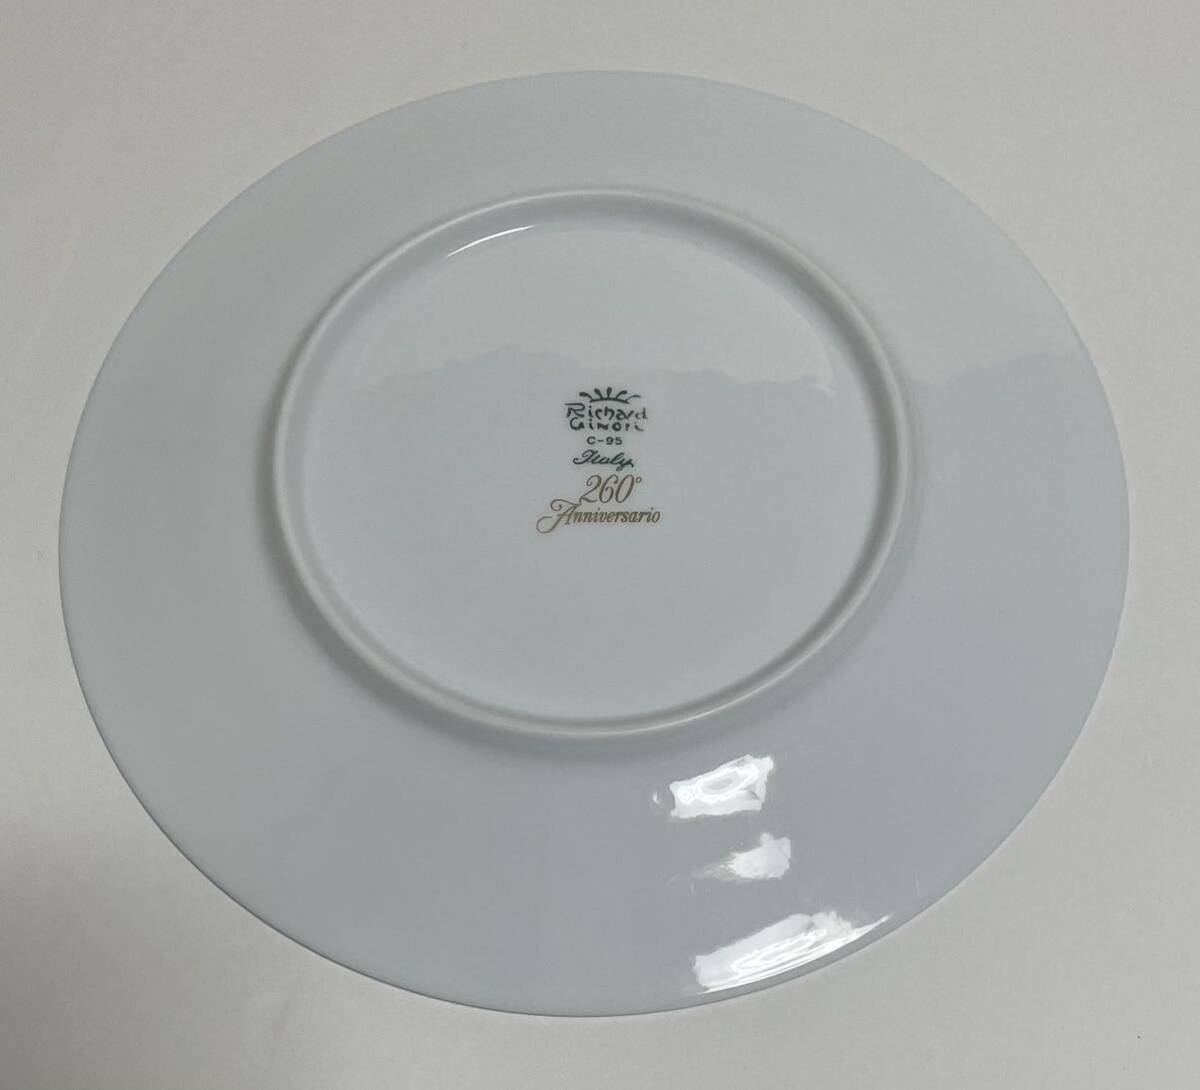 リチャードジノリ イヤープレート 飾り皿 Richard Ginori ブランド食器 1995 ROMA - PIAZZA NAVONA ナヴォーナ広場の画像2